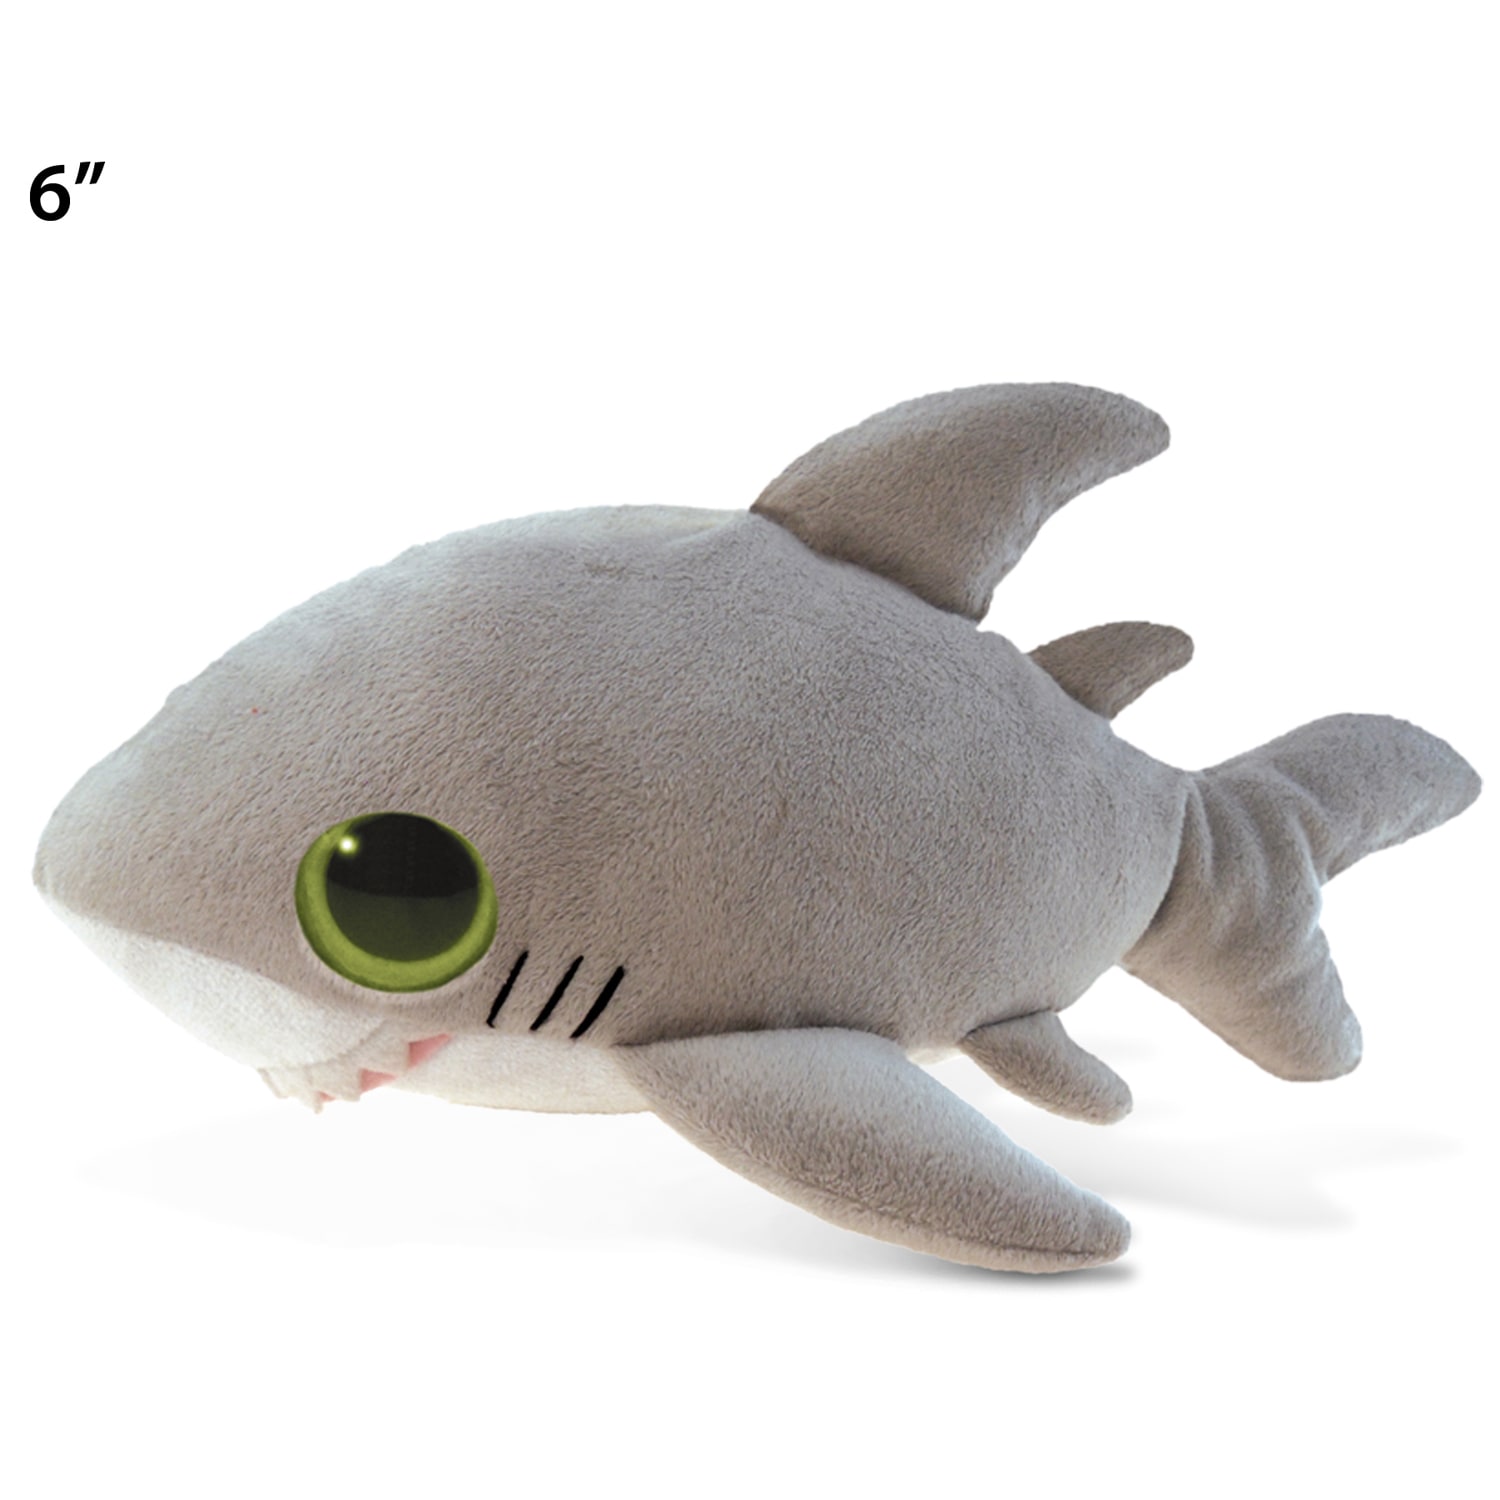 cuddly toy shark